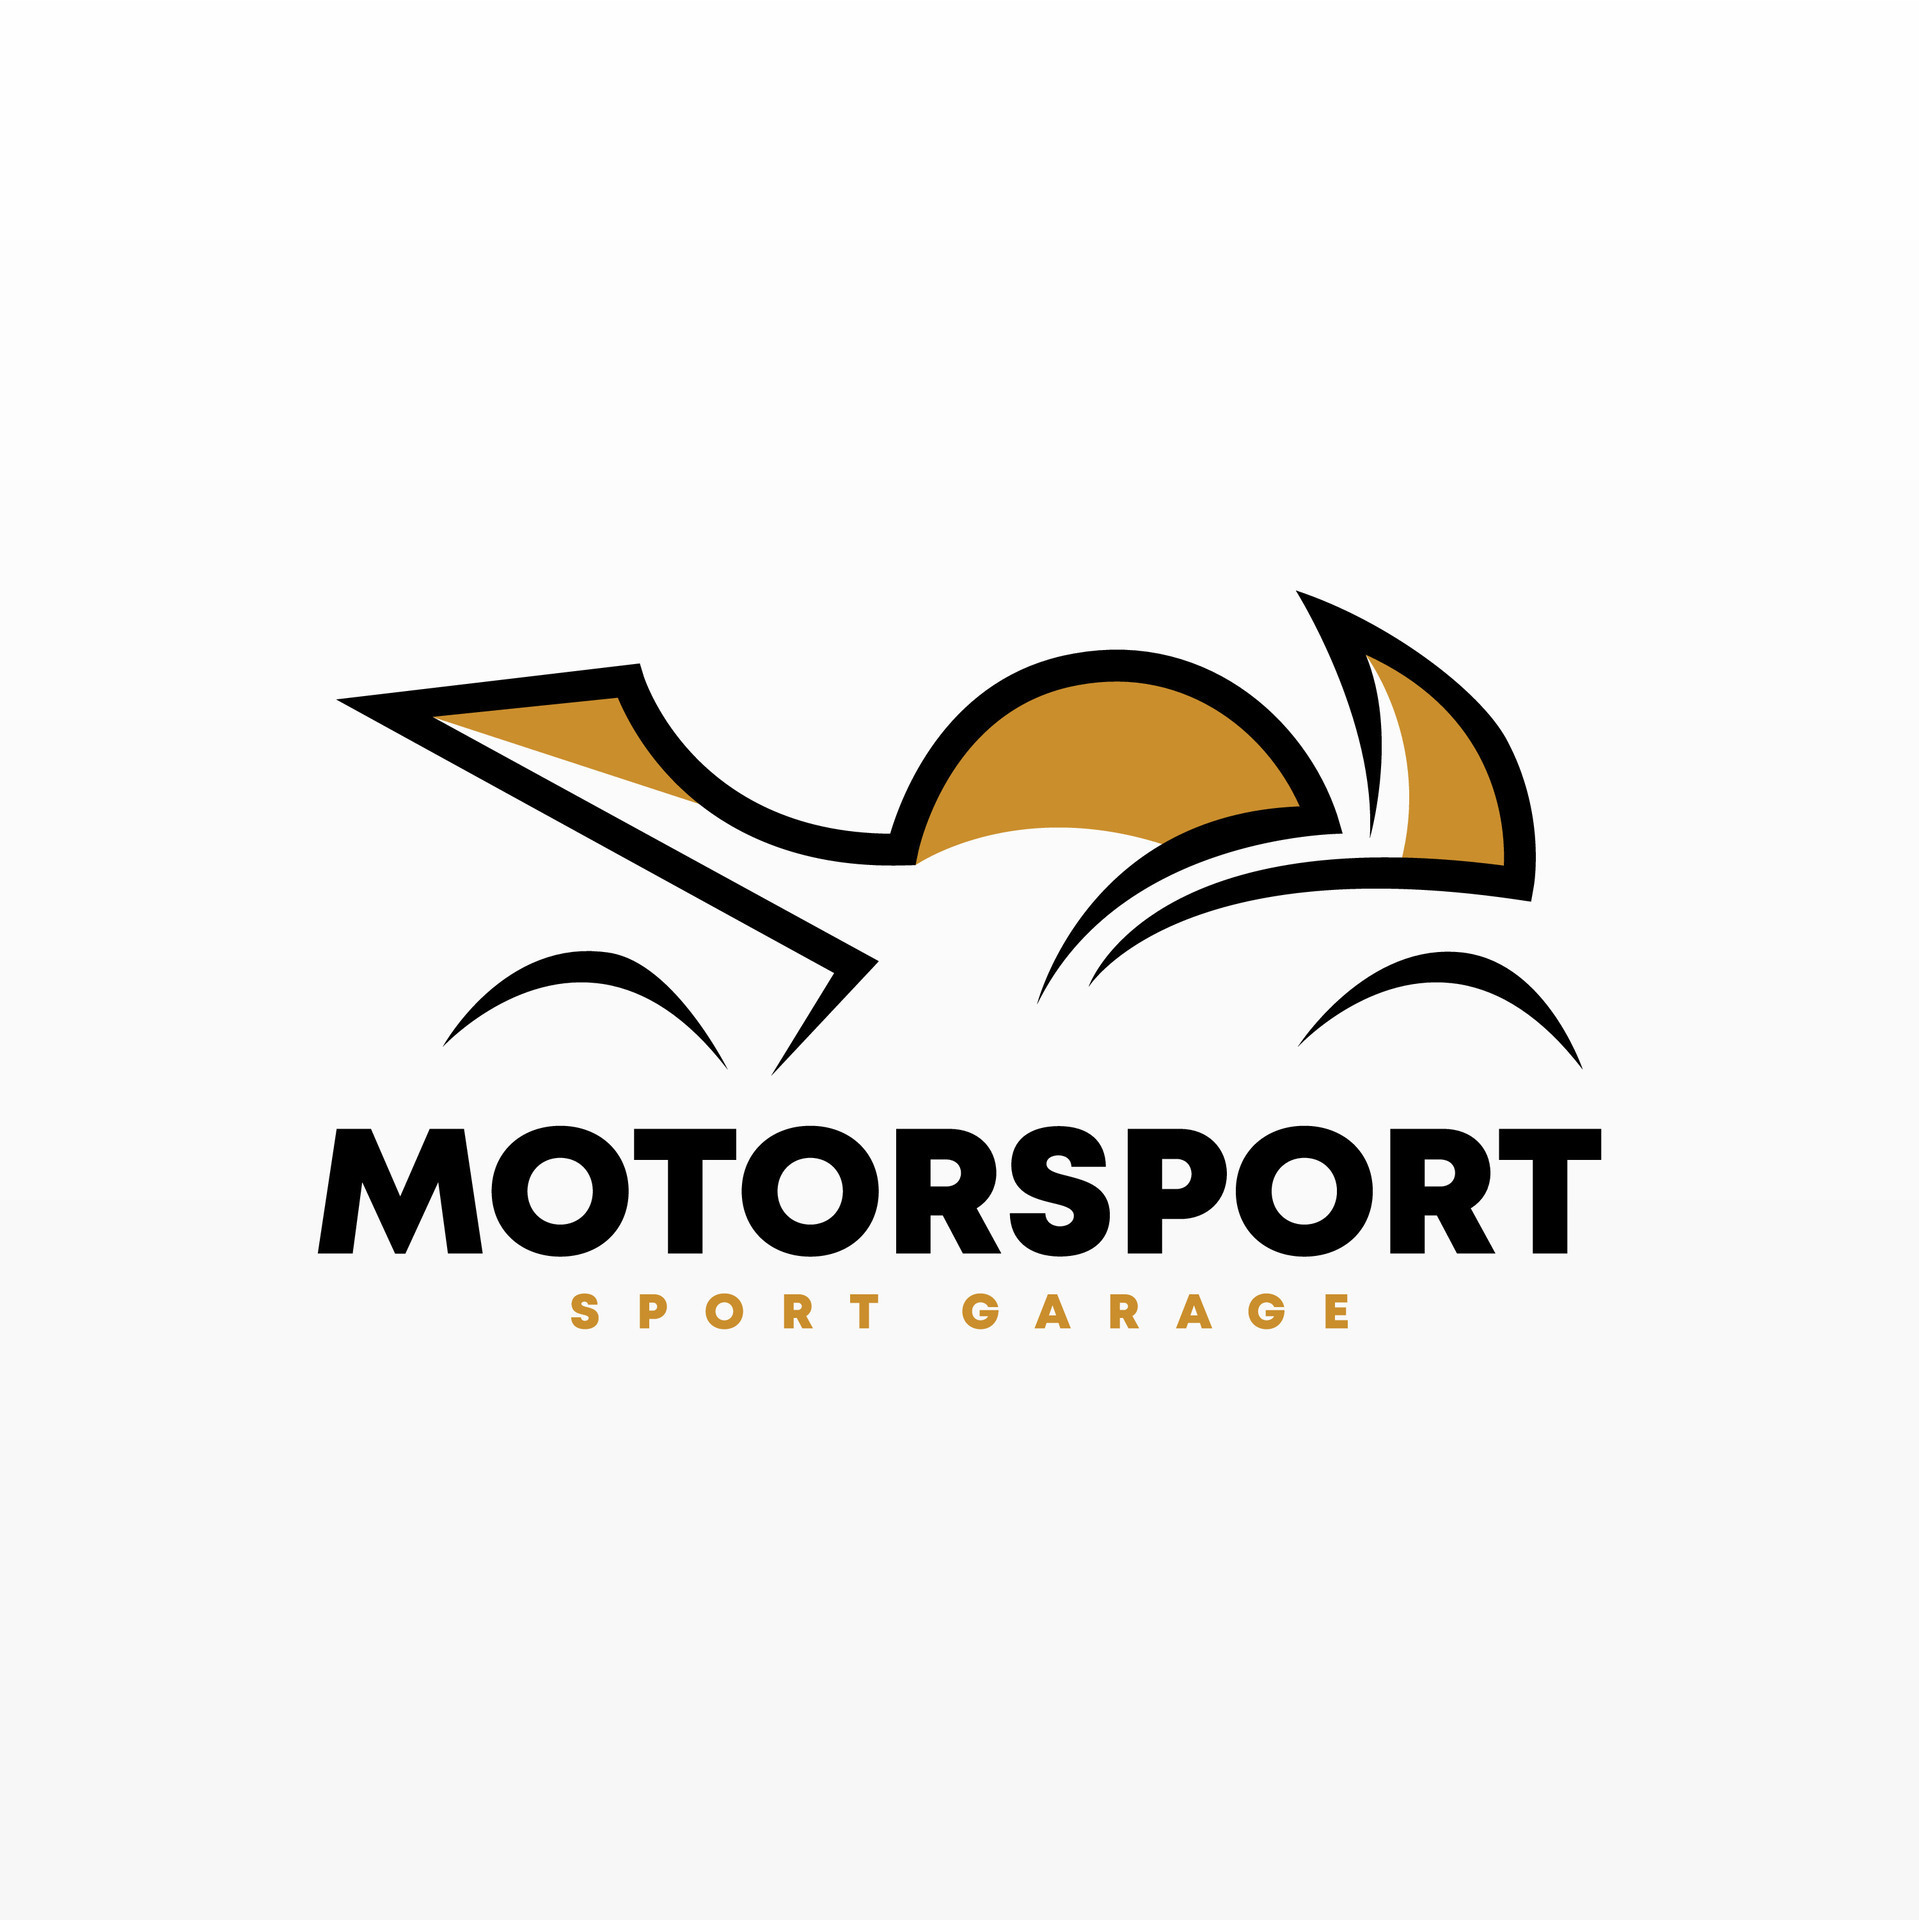 Motor sport logo design template. Motorcycle logo concept 28009862 ...